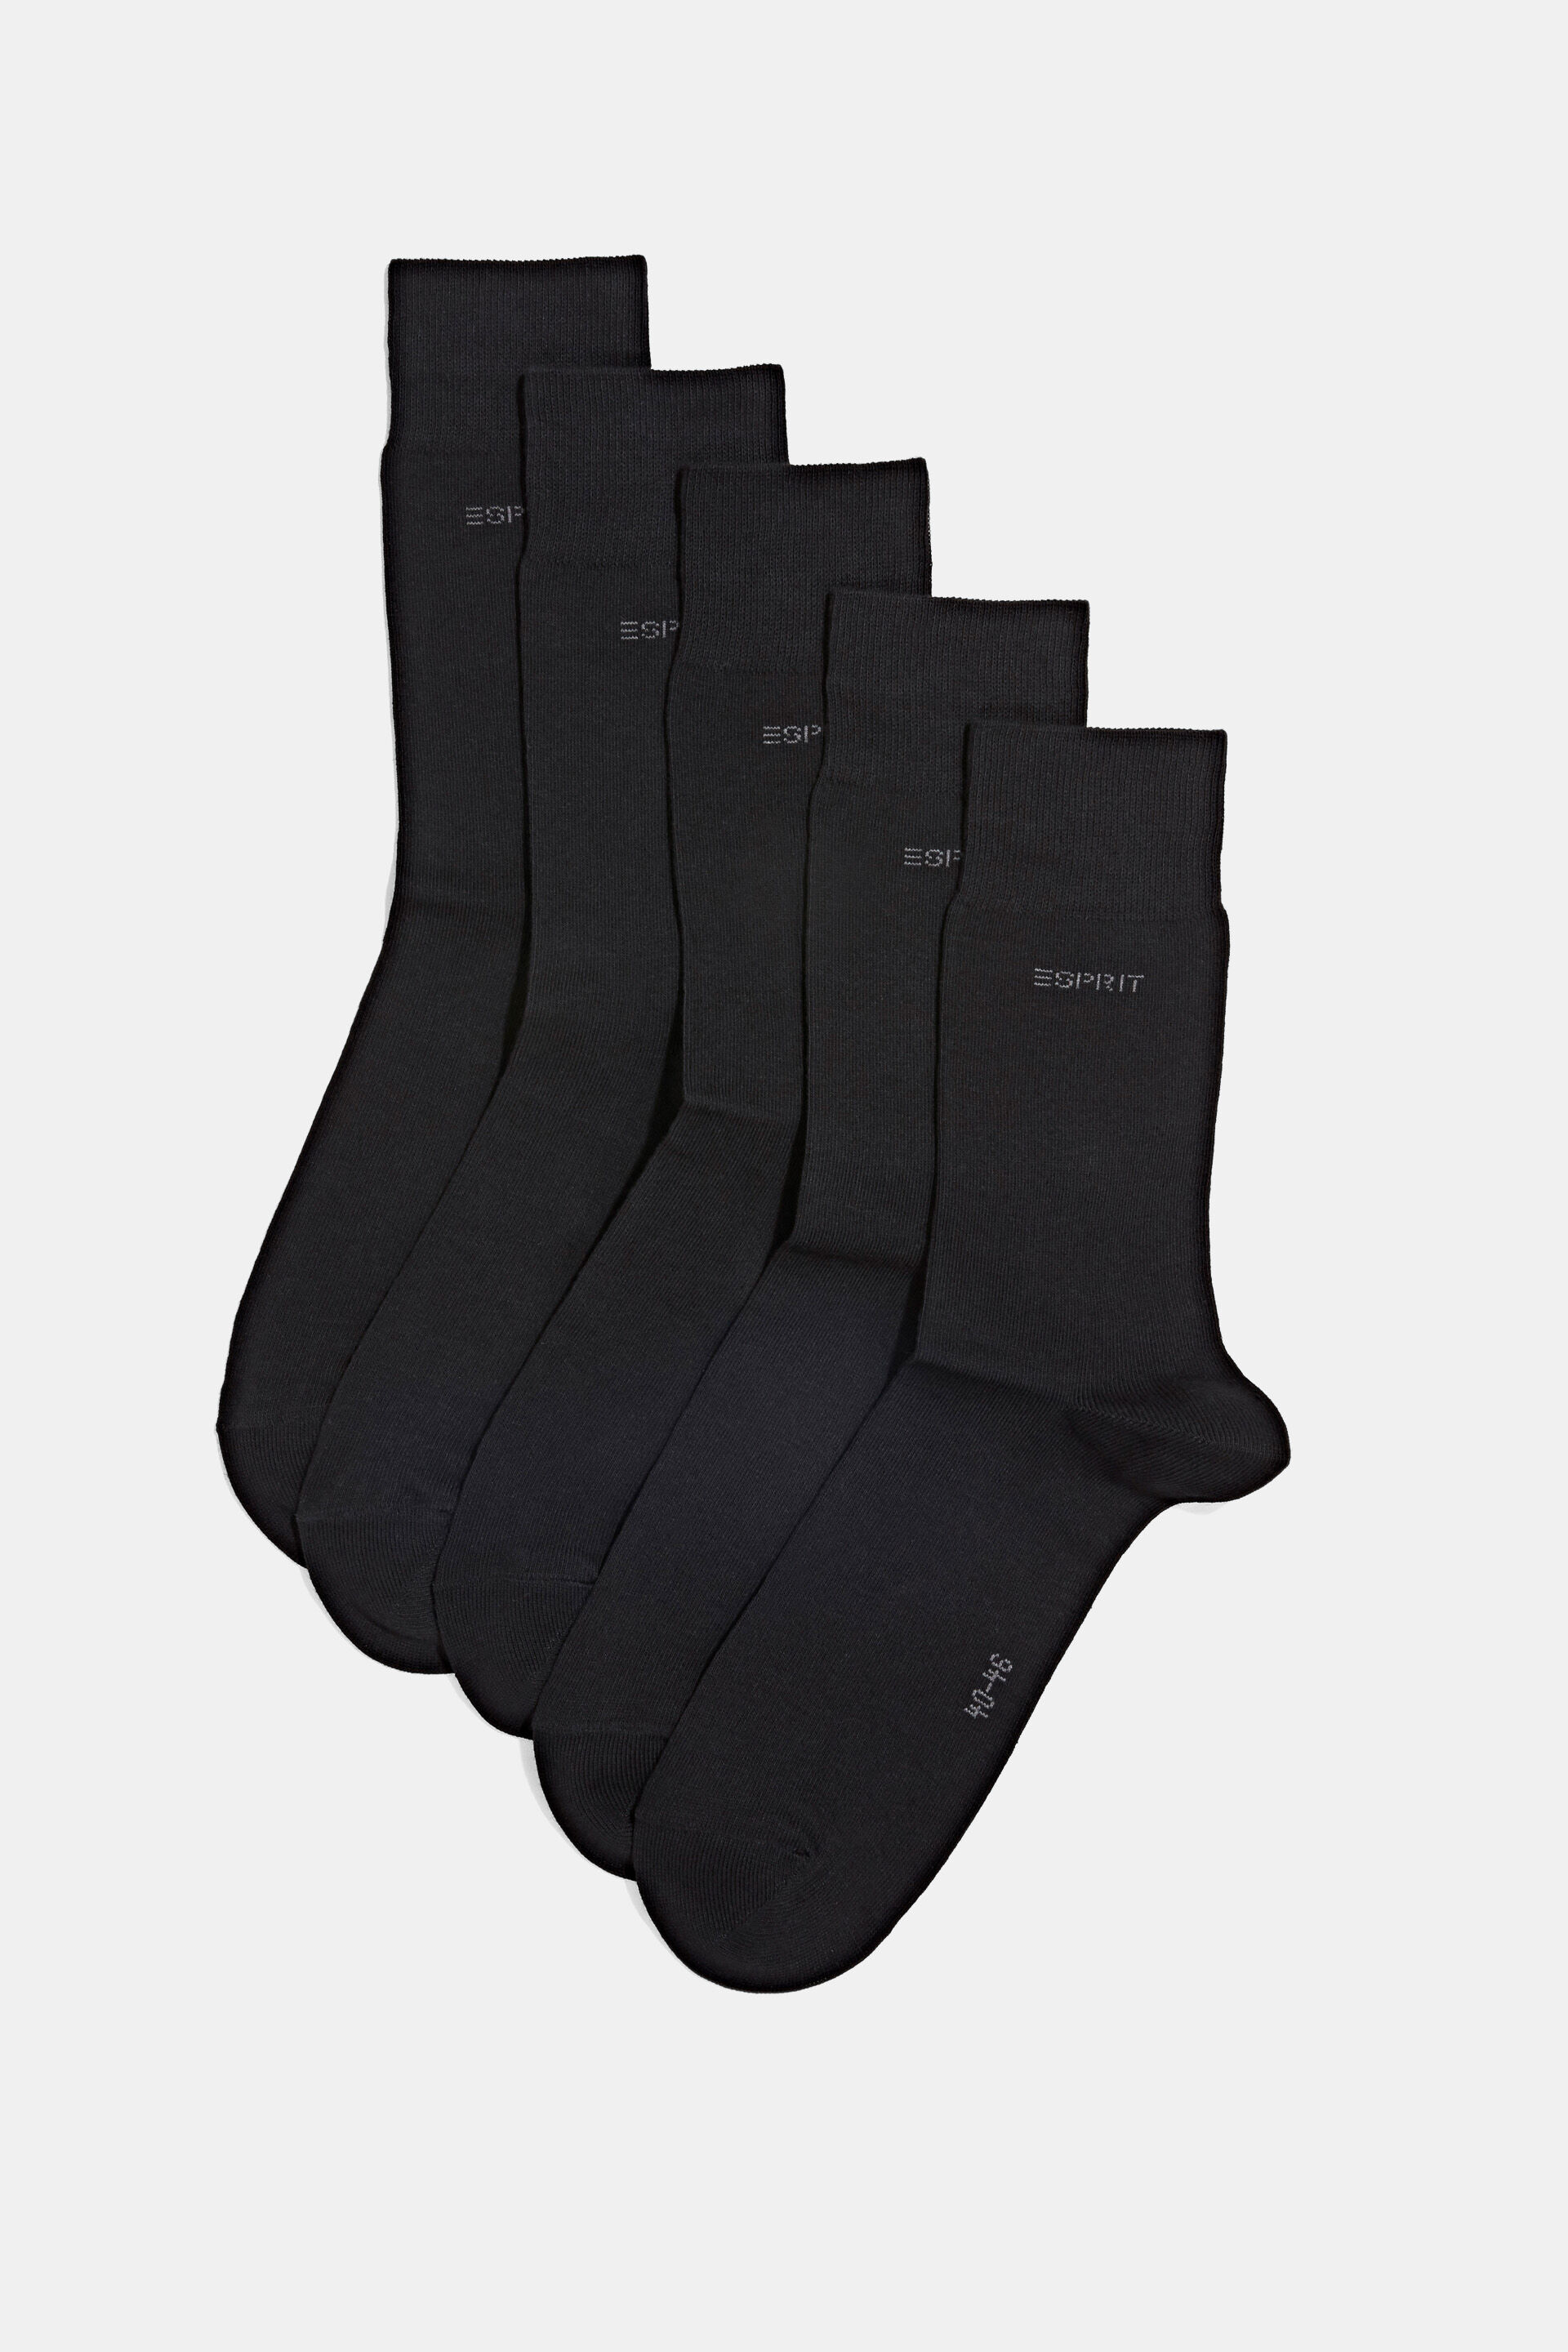 Esprit Bikini 5er-Pack Socken aus Bio-Baumwollmischung